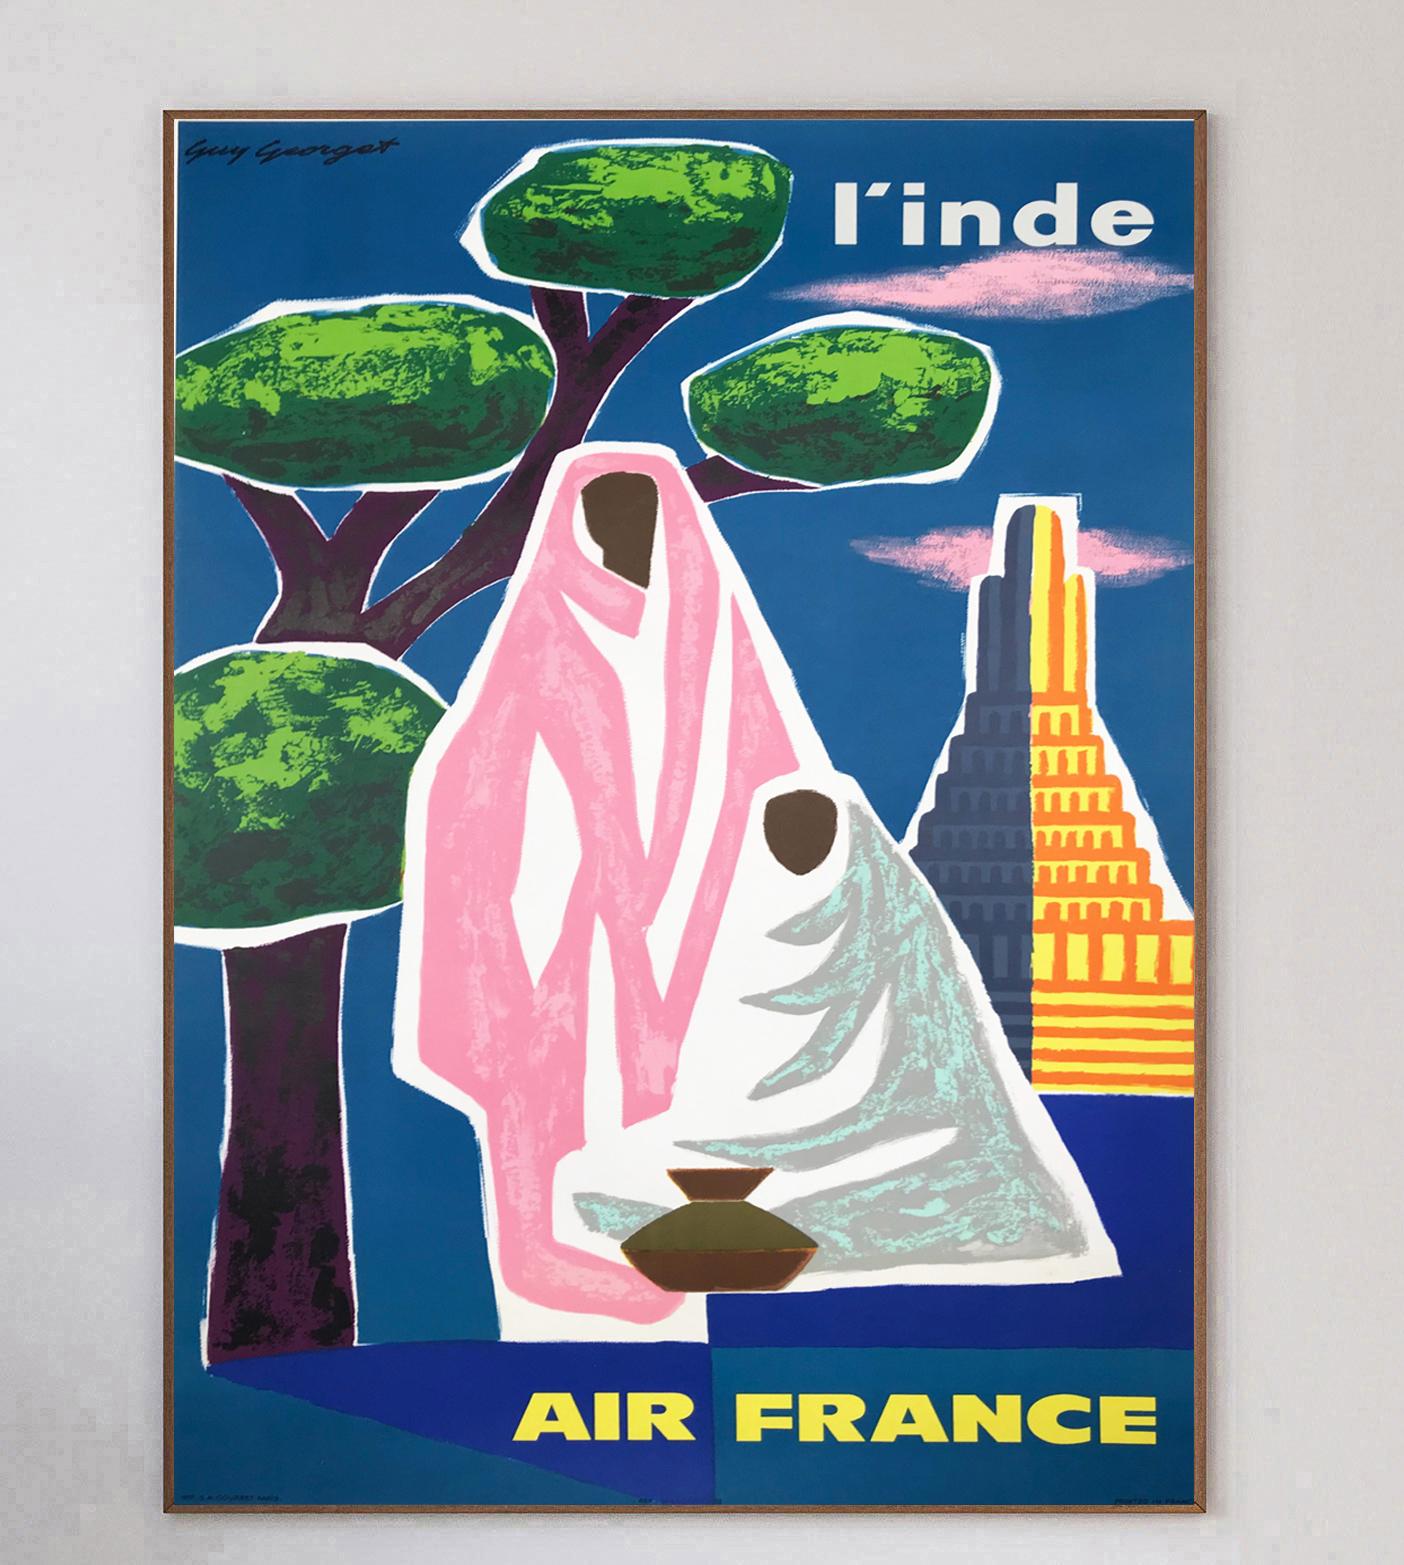 Réalisée par l'artiste français Guy Georget, qui a travaillé sur de nombreuses affiches d'Air France à l'époque, cette affiche vantant les mérites des lignes aériennes vers l'Inde a été créée en 1963. Air France a été créée en 1933 à la suite de la